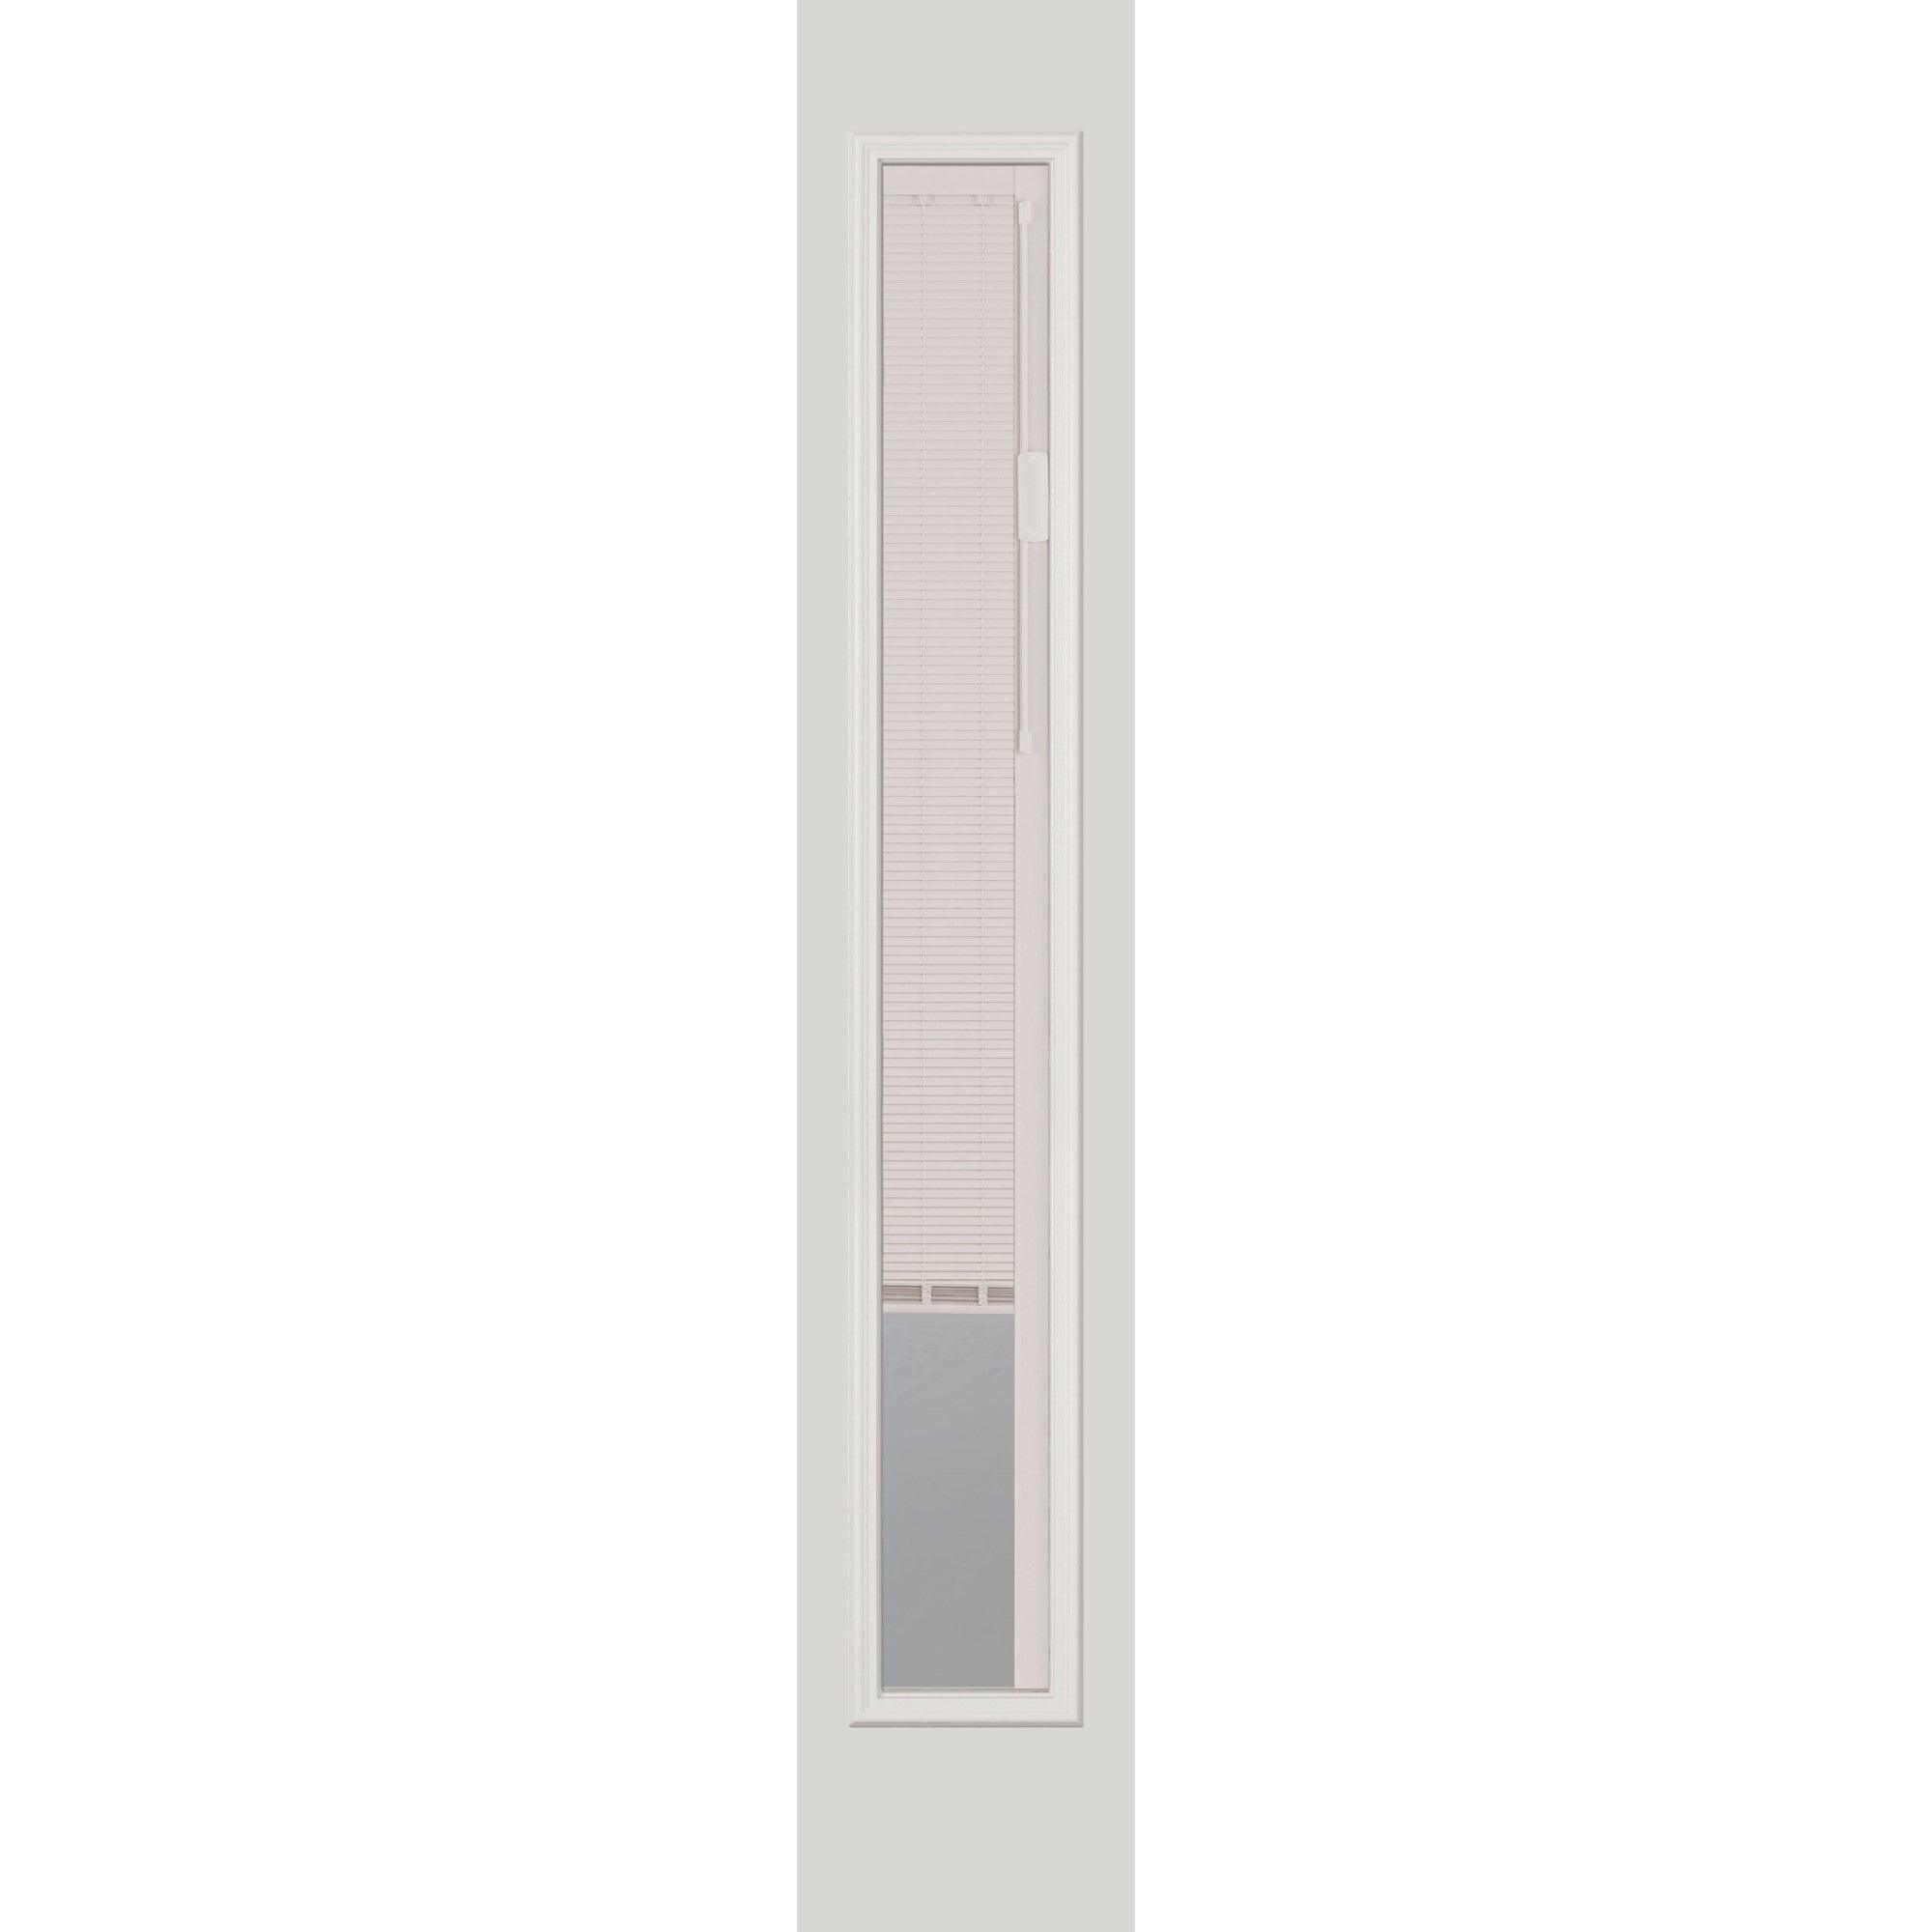 Raise & Lower Blinds Glass and Frame Kit (Full Sidelite) - Pease Doors: The Door Store